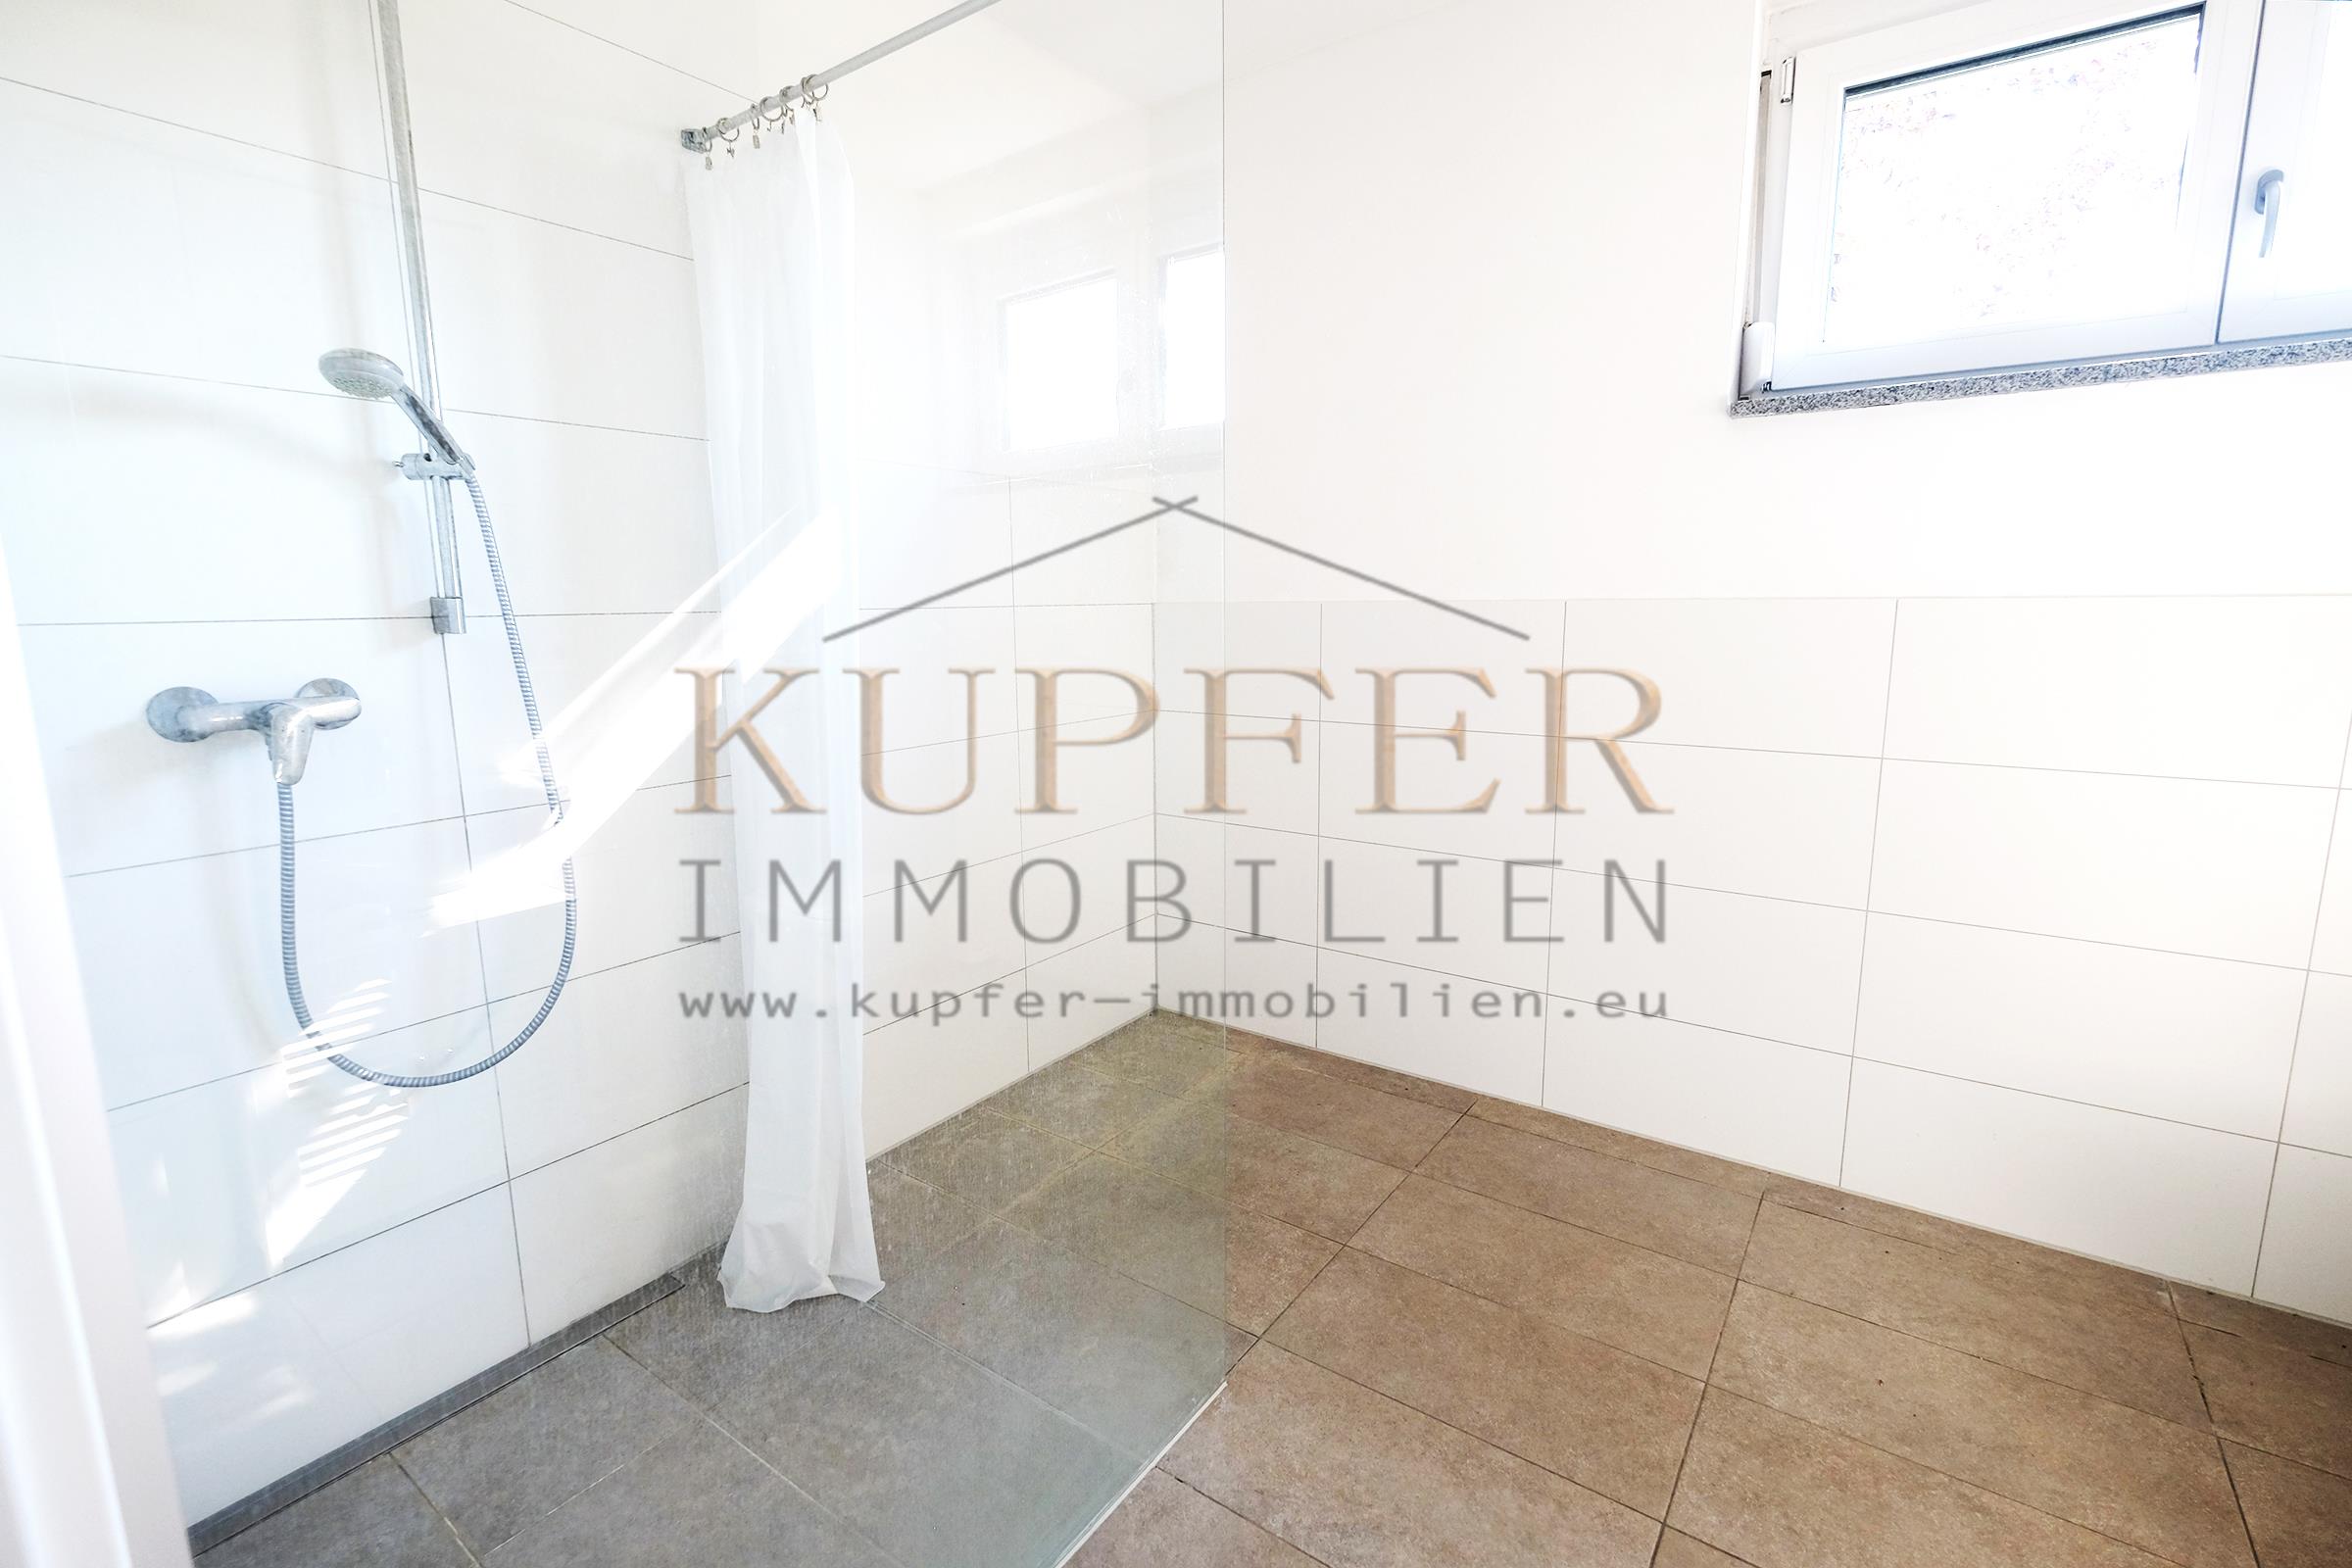 © 2019 KUPFER IMMOBILIEN